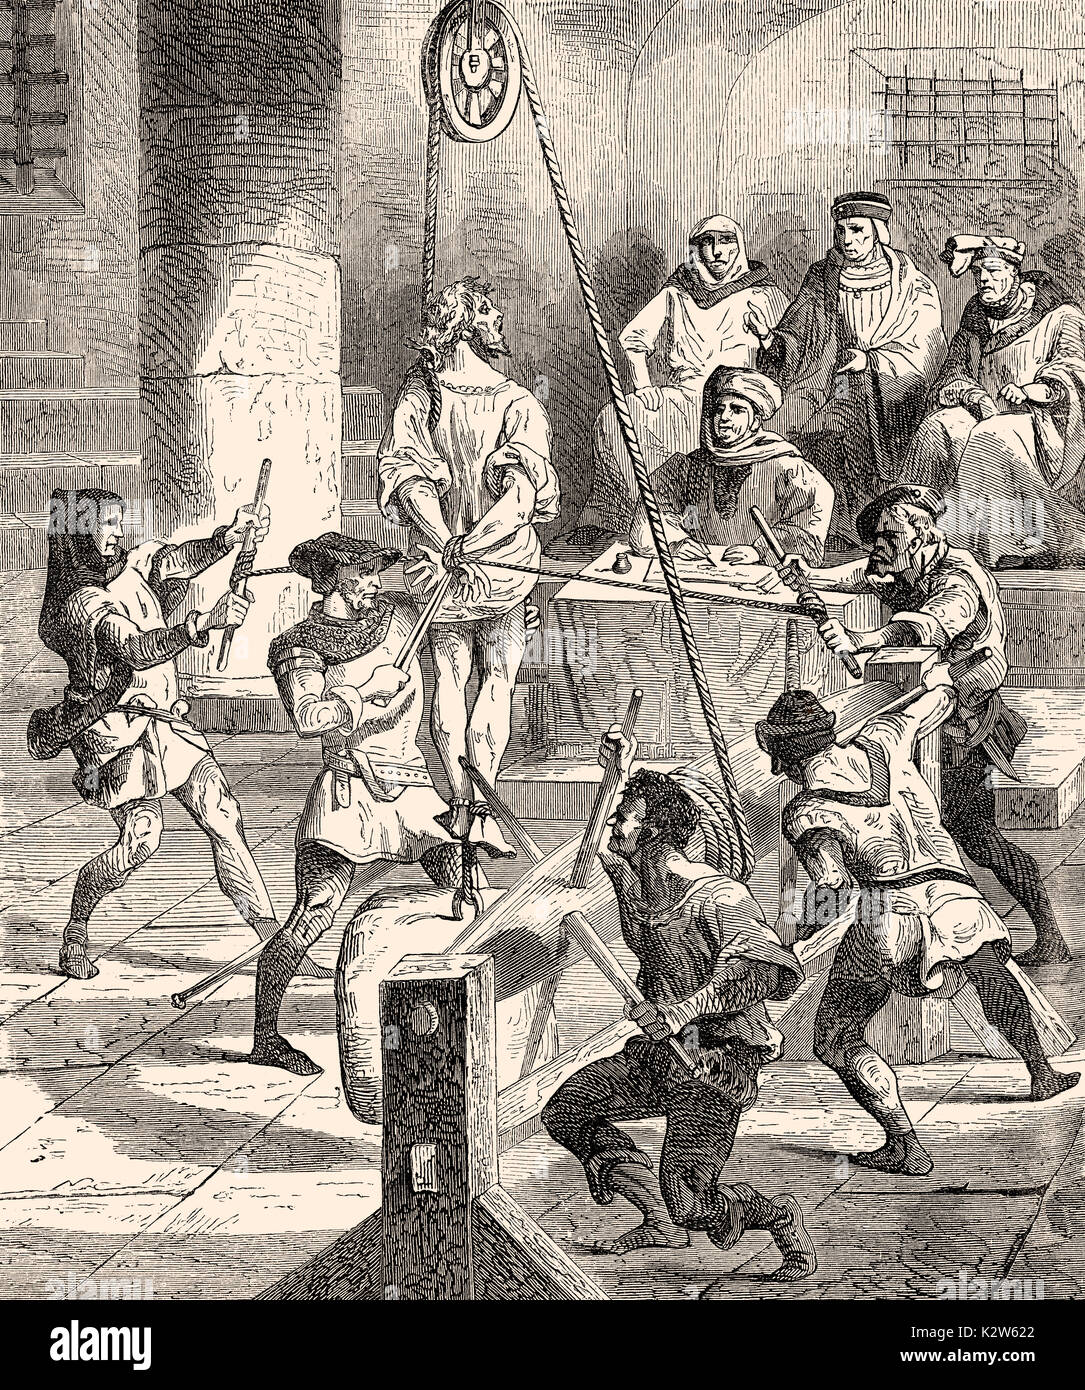 Inquisition, les méthodes de torture cruelle de l'église au 16e siècle Banque D'Images